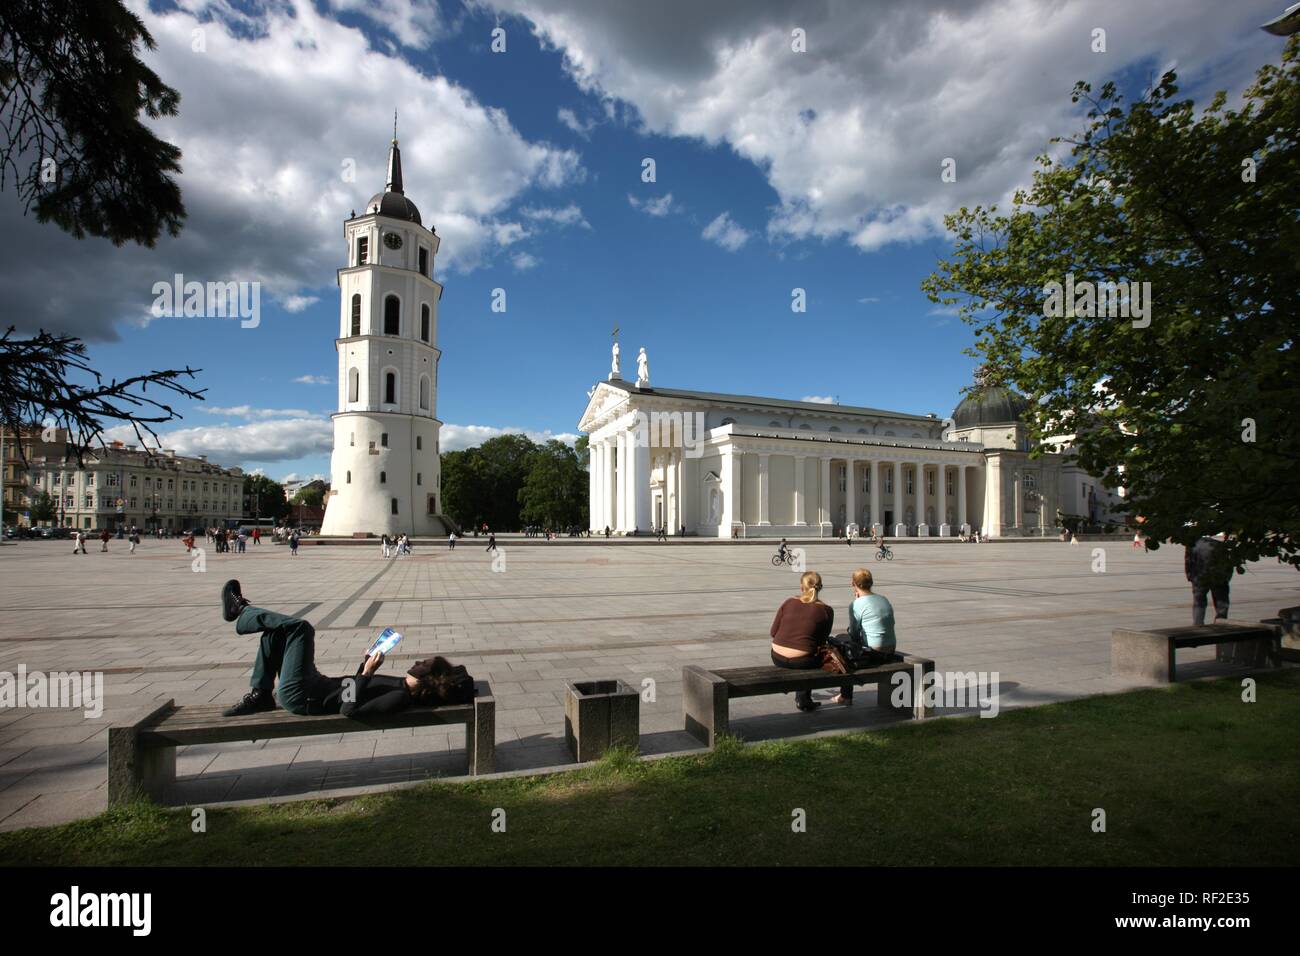 La Cathédrale Saint-stanislas avec clocher détaché, Varpine, Place de la Cathédrale, Vilnius, Lituanie, Pays Baltes Banque D'Images